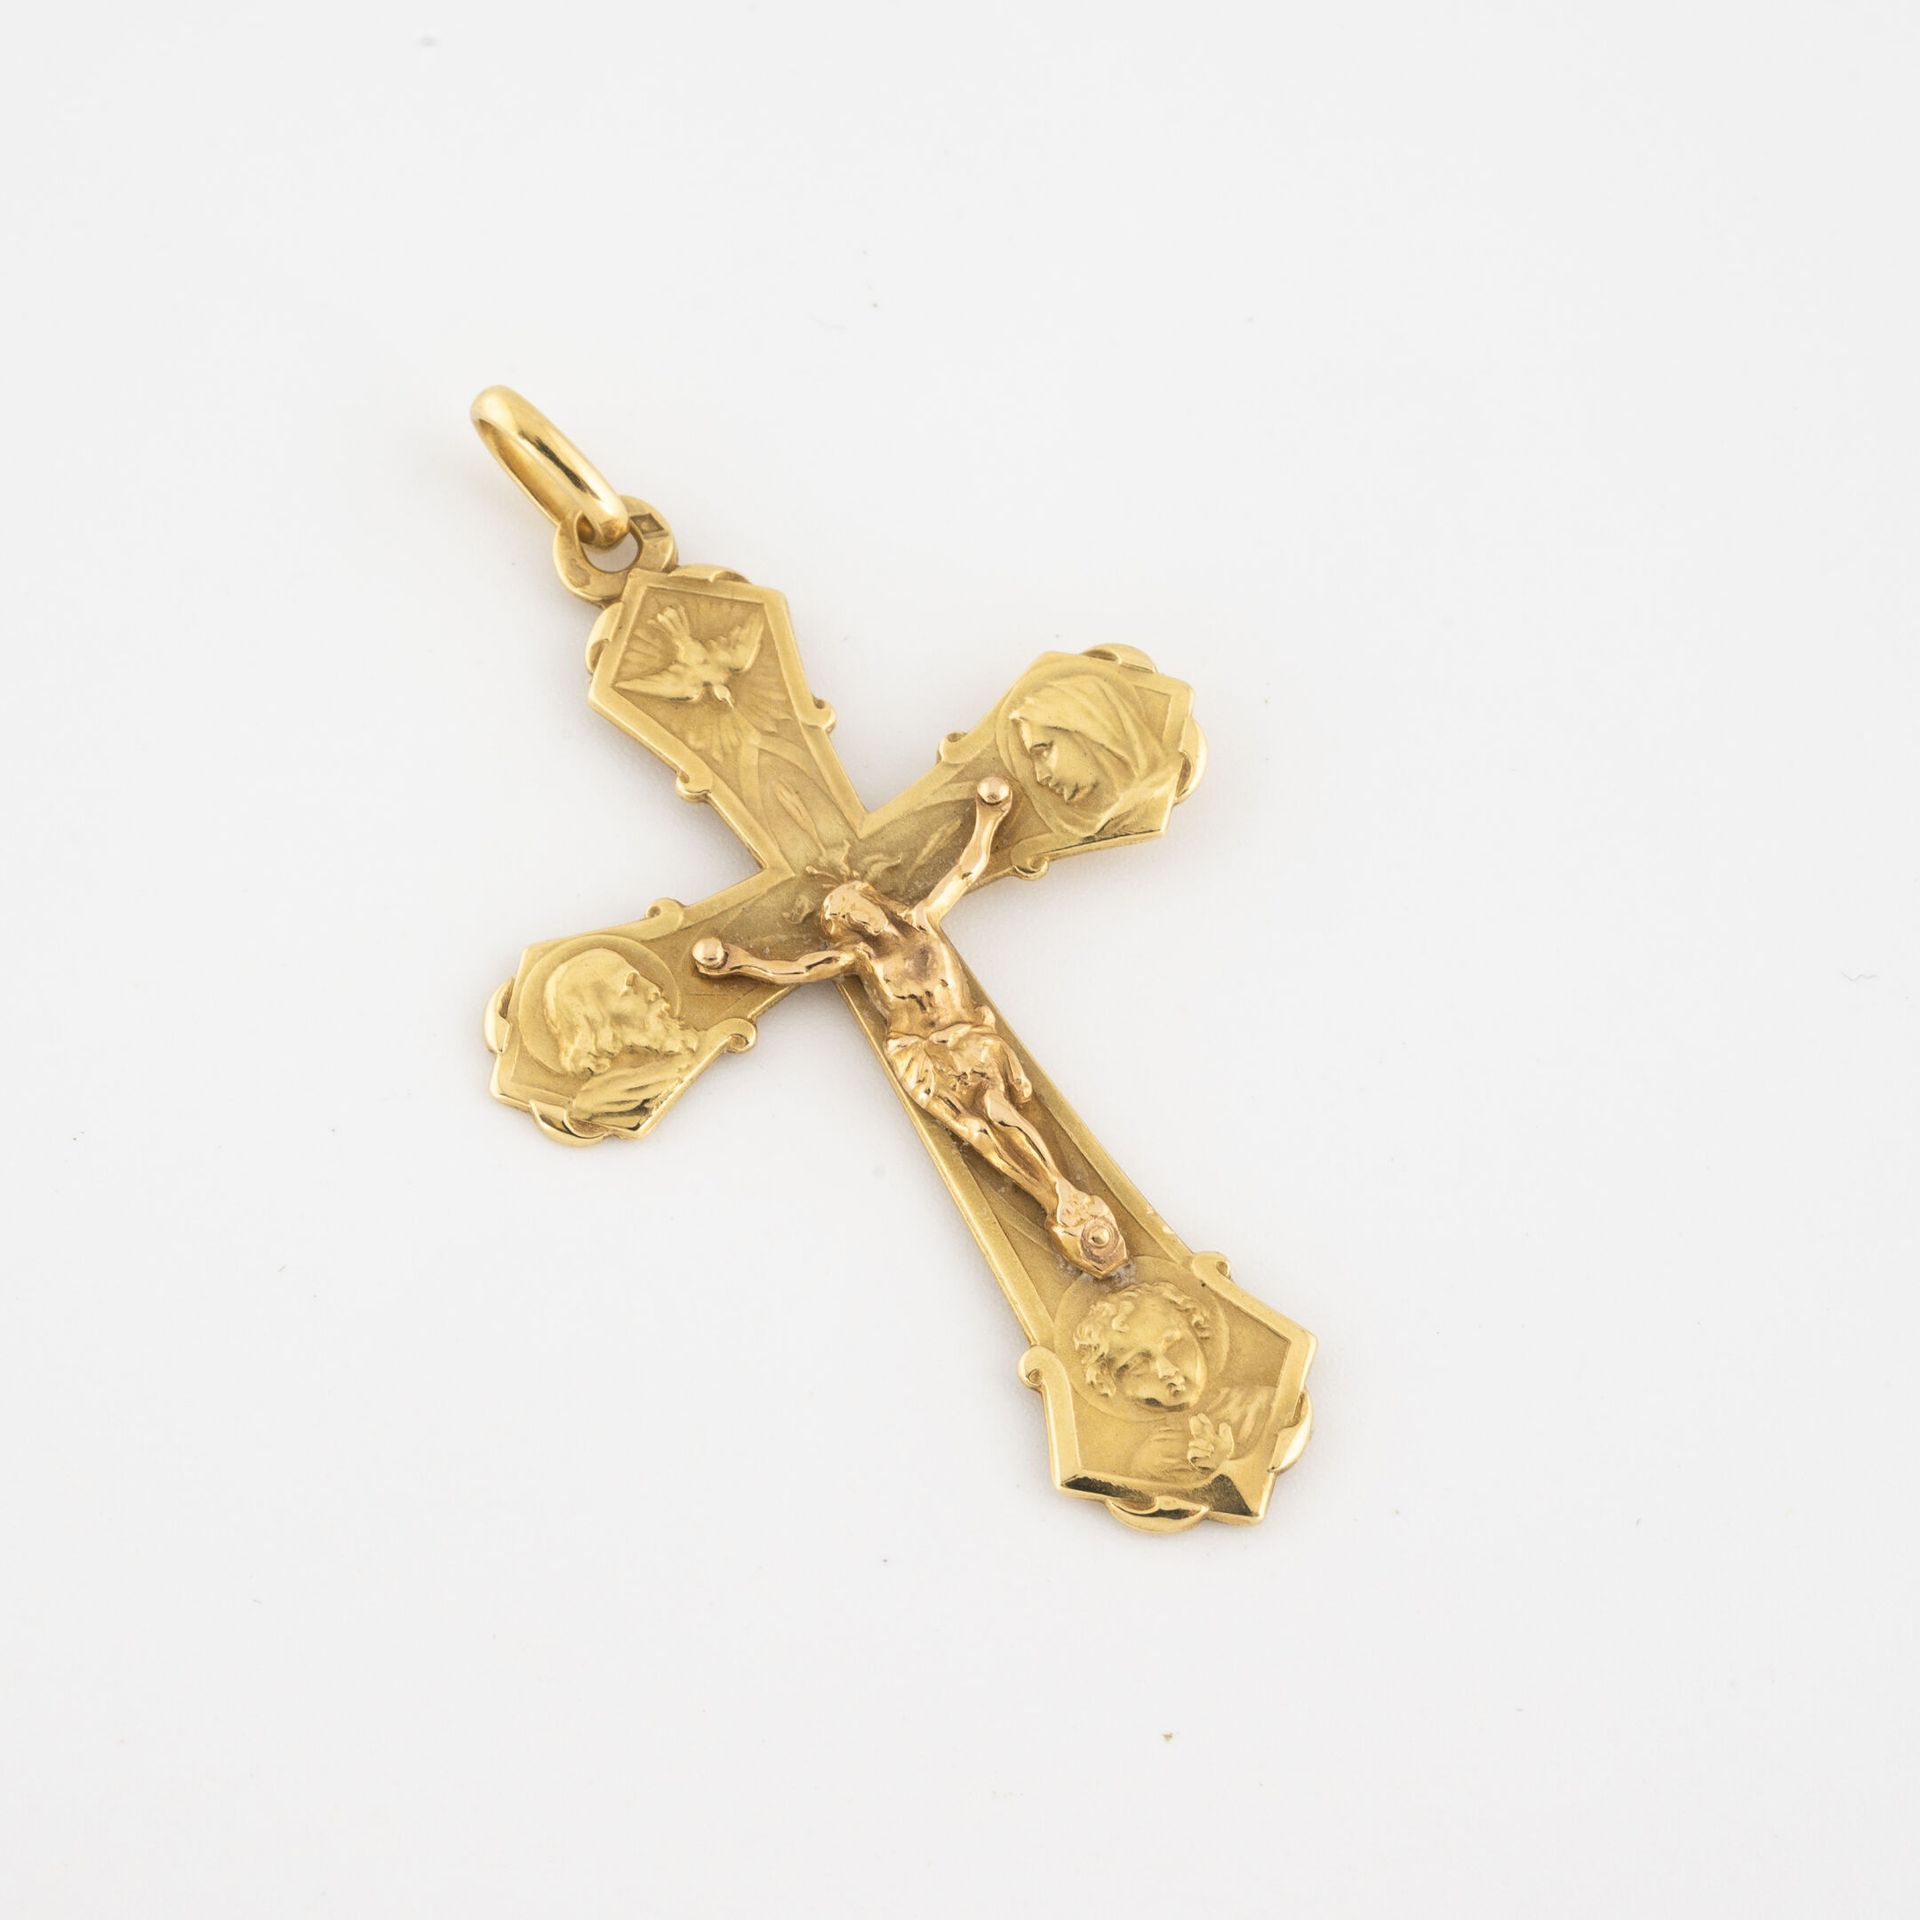 Null Pendentif croix en or jaune (750).

Poids : 5 g. 

Chocs.